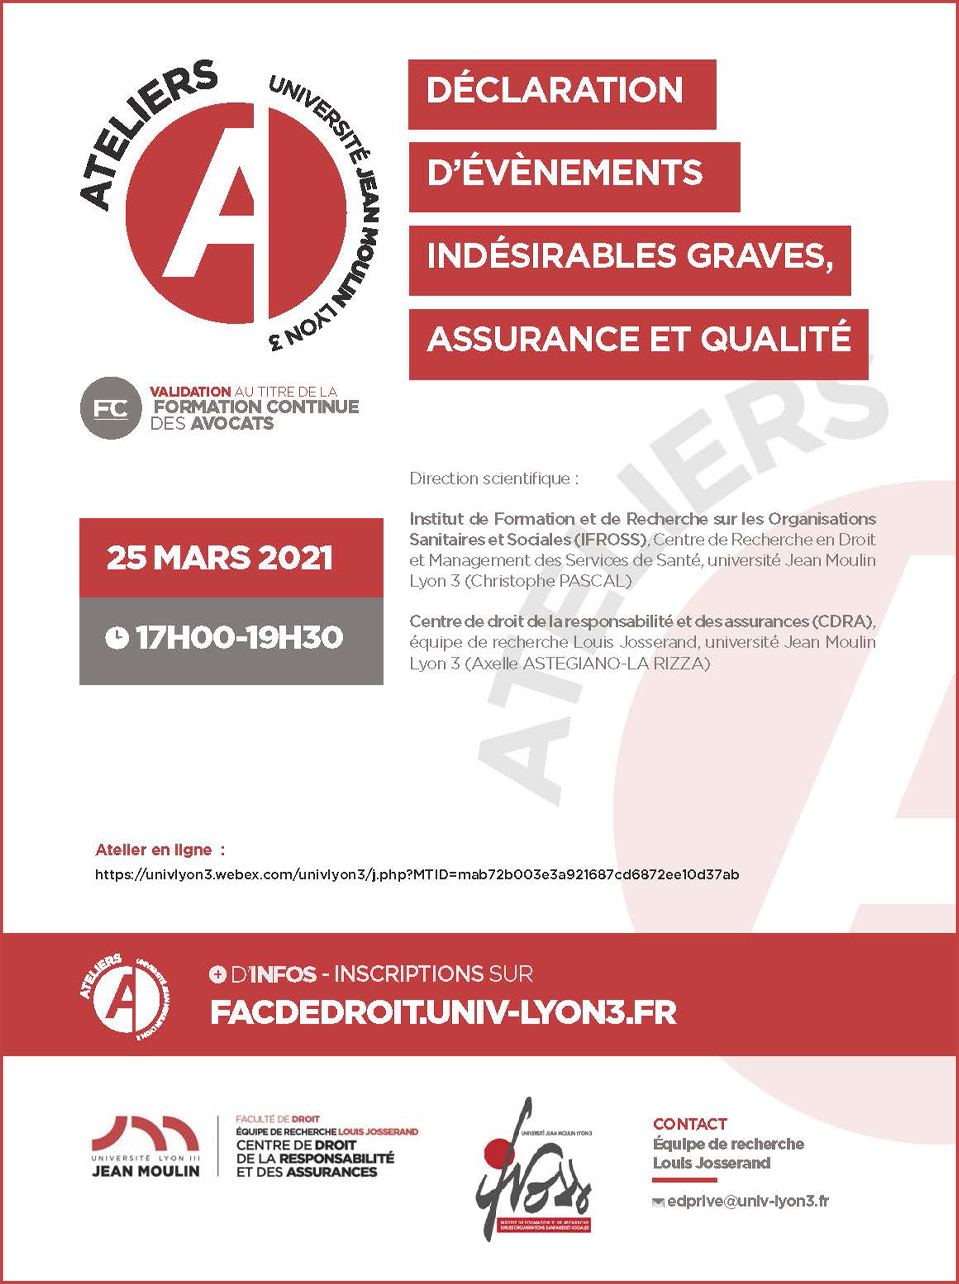 AFFICHE_atelier du 25 mars 2021_AAstegiano-La Rizza_VF.jpg